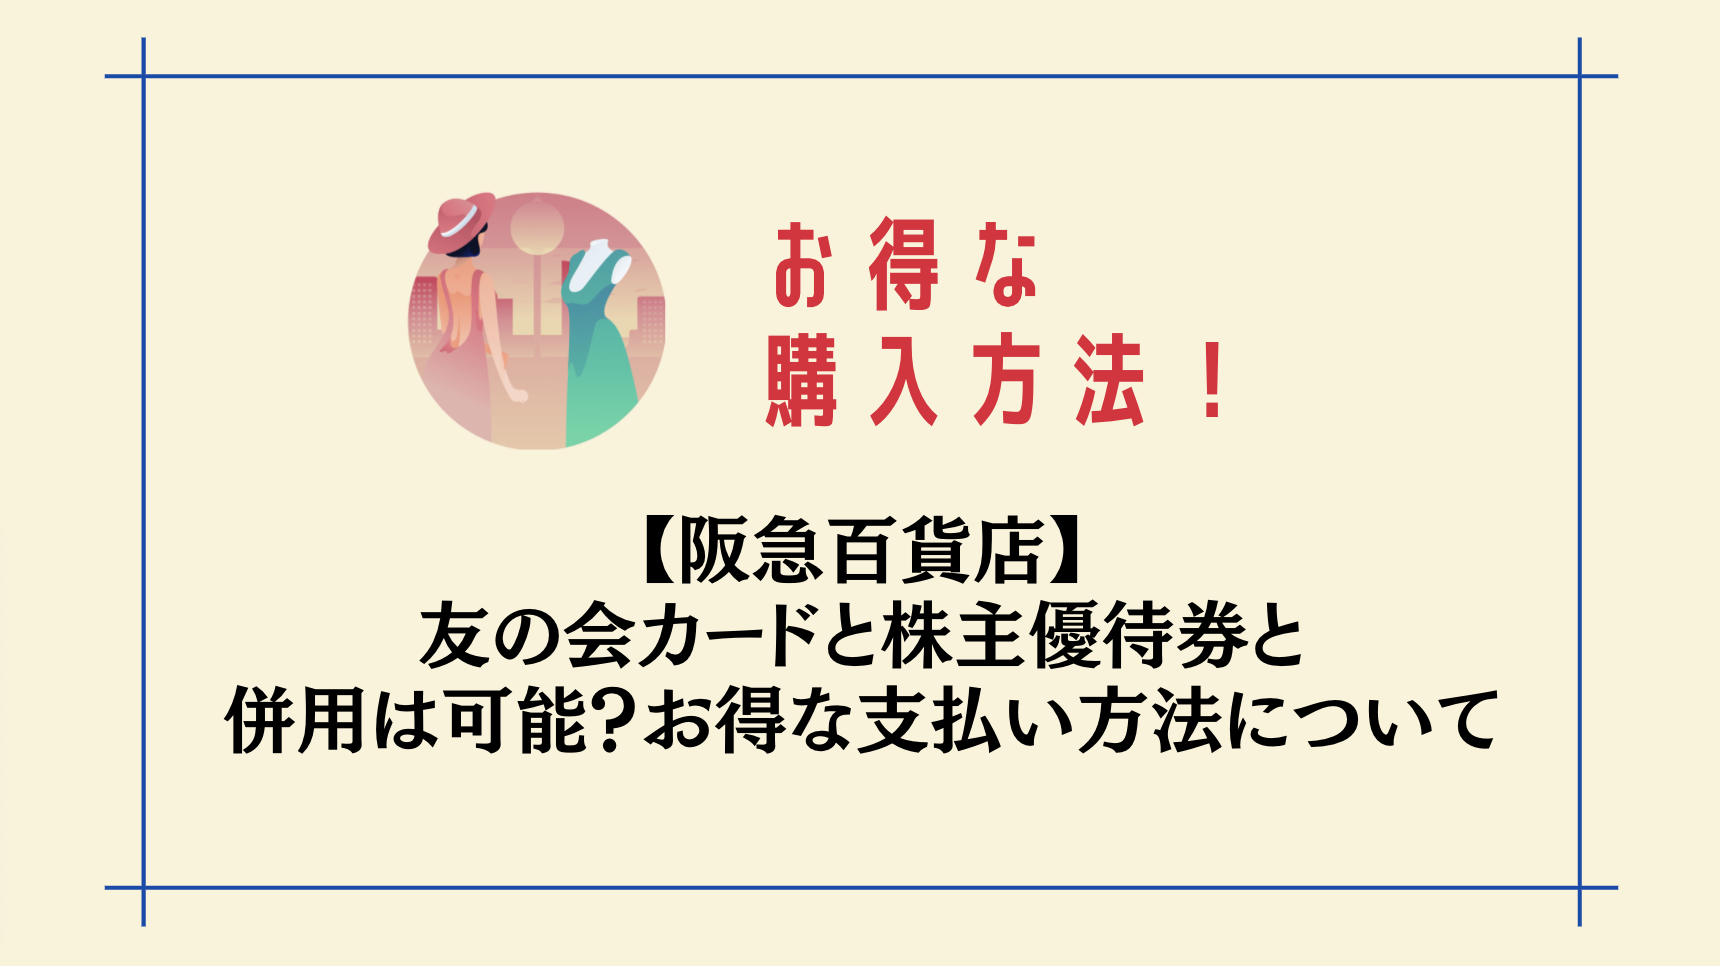 阪急百貨店 友の会カードと株主優待券と併用は可能 お得な購入方法について Attack25